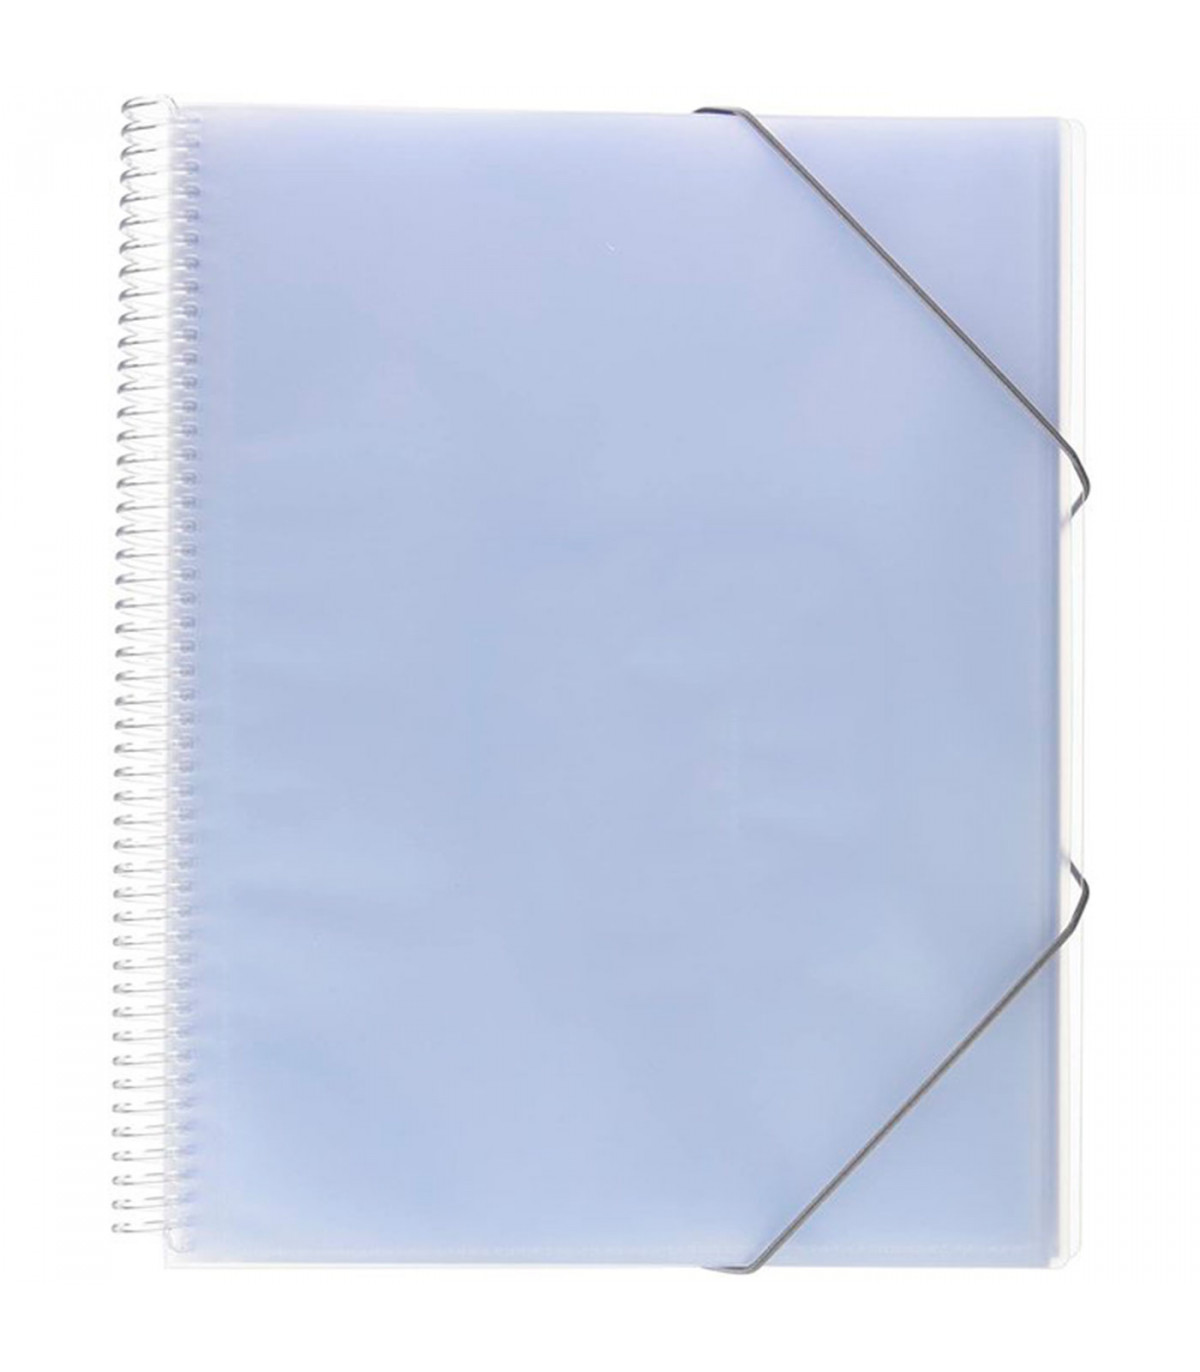 Tradineur - Pack de 100 fundas de plástico transparente A4, multitaladro,  16 agujeros, ordenar y clasificar apuntes, documentos